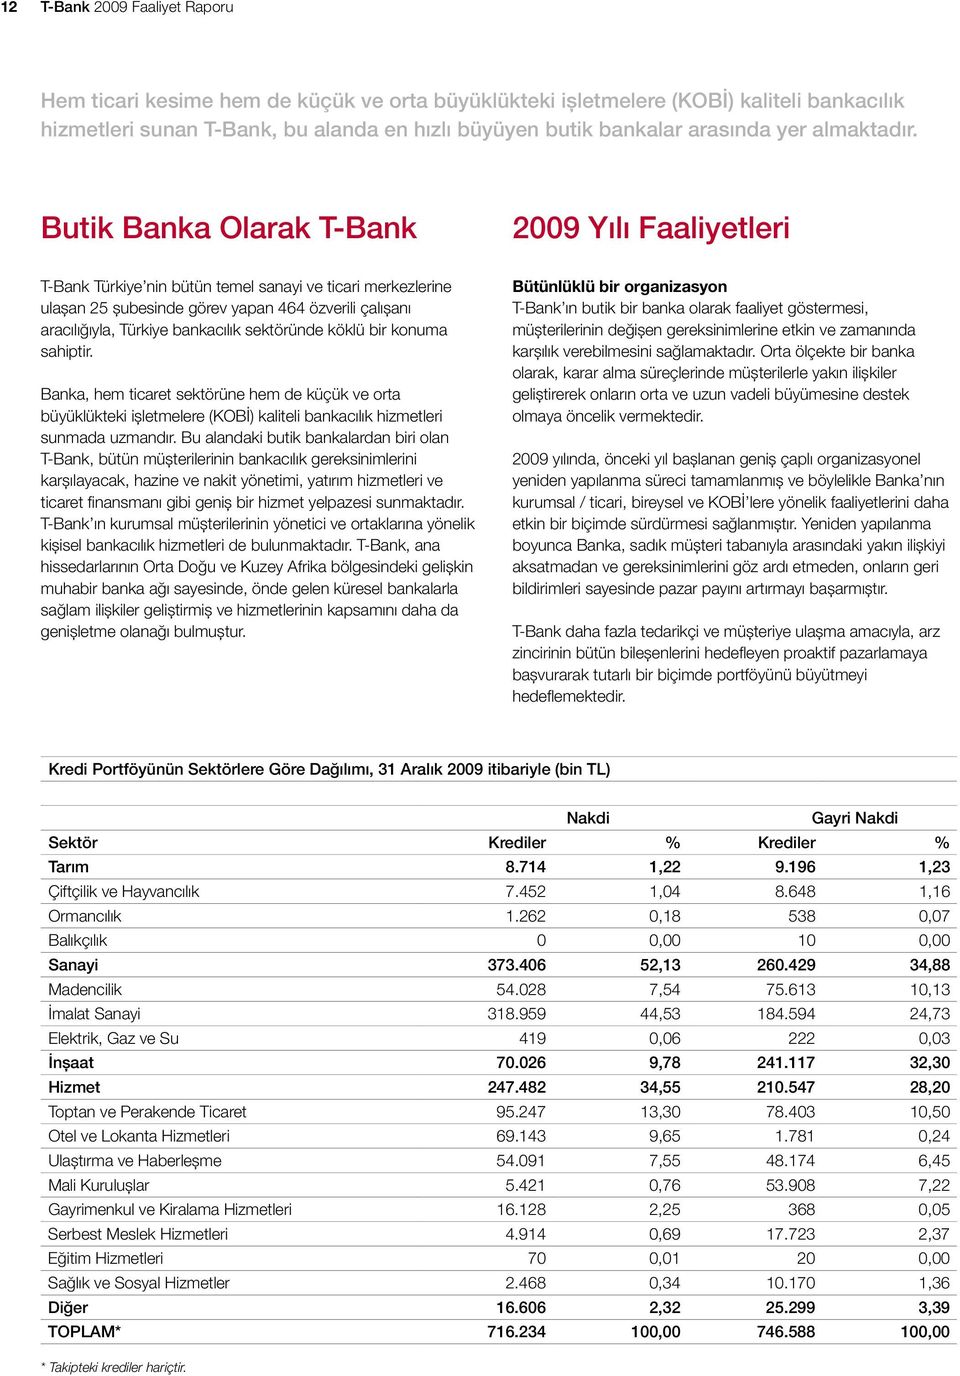 Butik Banka Olarak T-Bank 2009 Yılı Faaliyetleri T-Bank Türkiye nin bütün temel sanayi ve ticari merkezlerine ulaşan 25 şubesinde görev yapan 464 özverili çalışanı aracılığıyla, Türkiye bankacılık